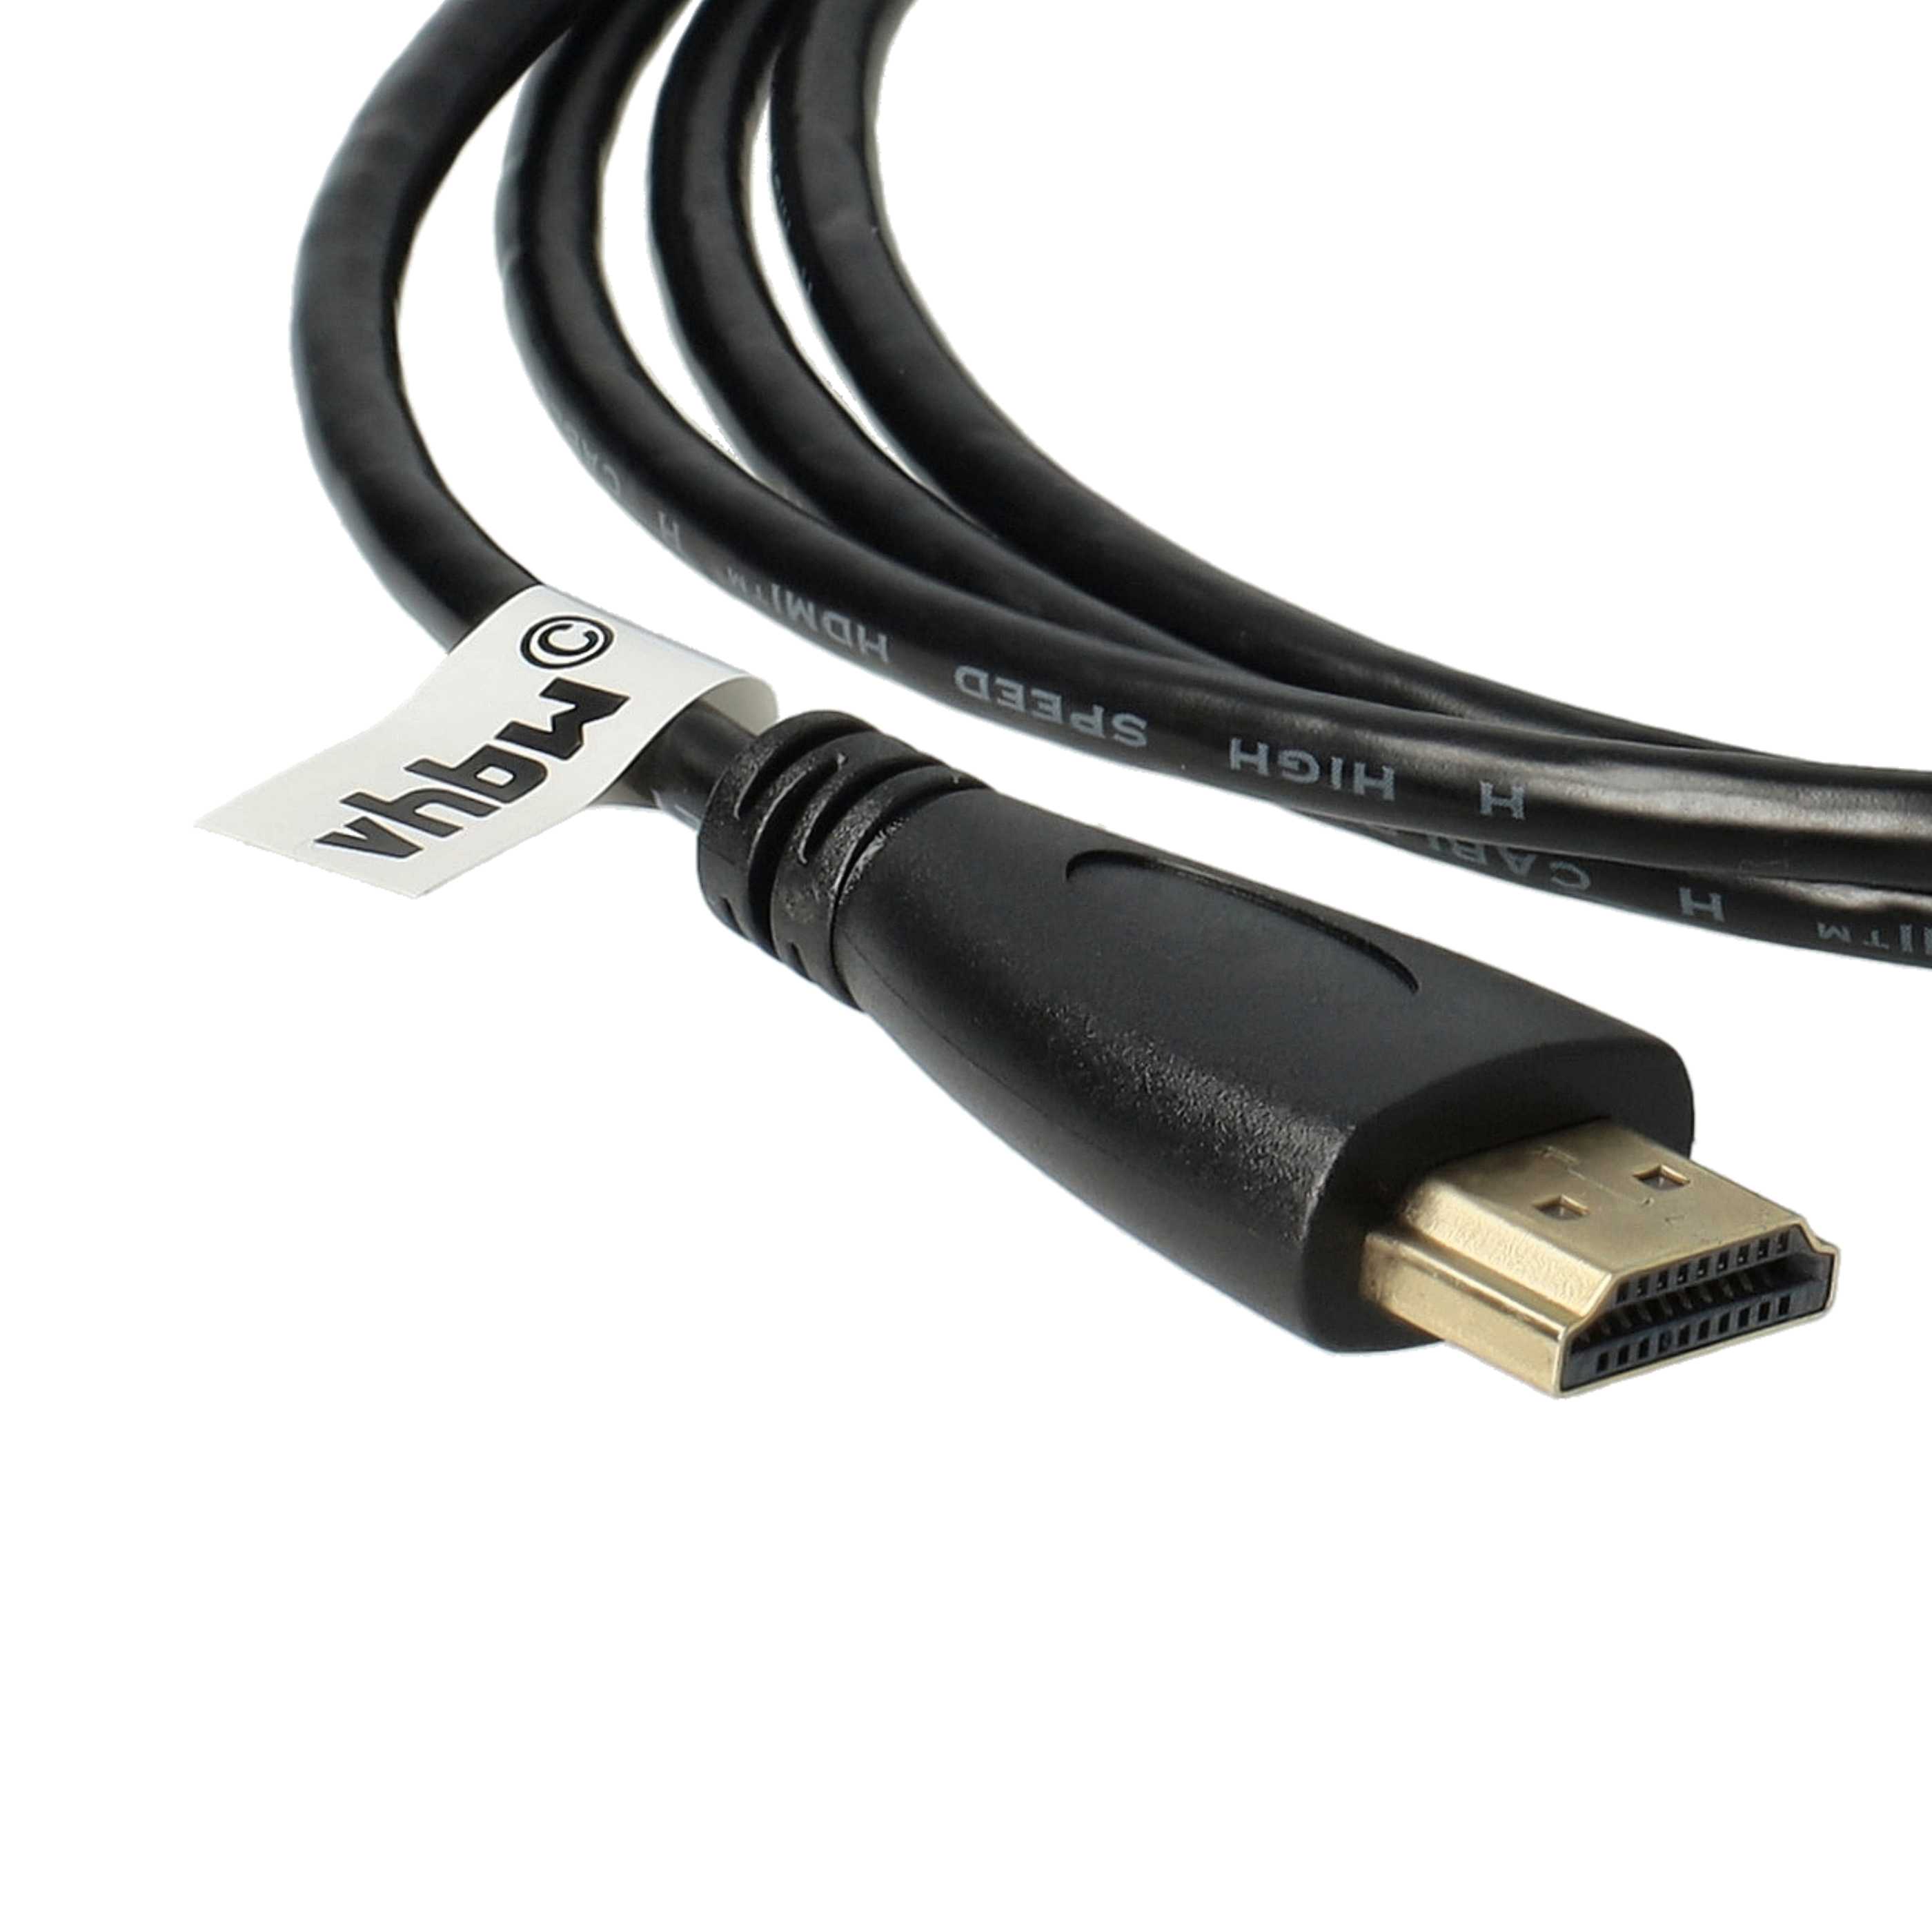 HDMI-Kabel, Micro-HDMI auf HDMI 1.4 1,4m für Tablet, Smartphone, Kamera